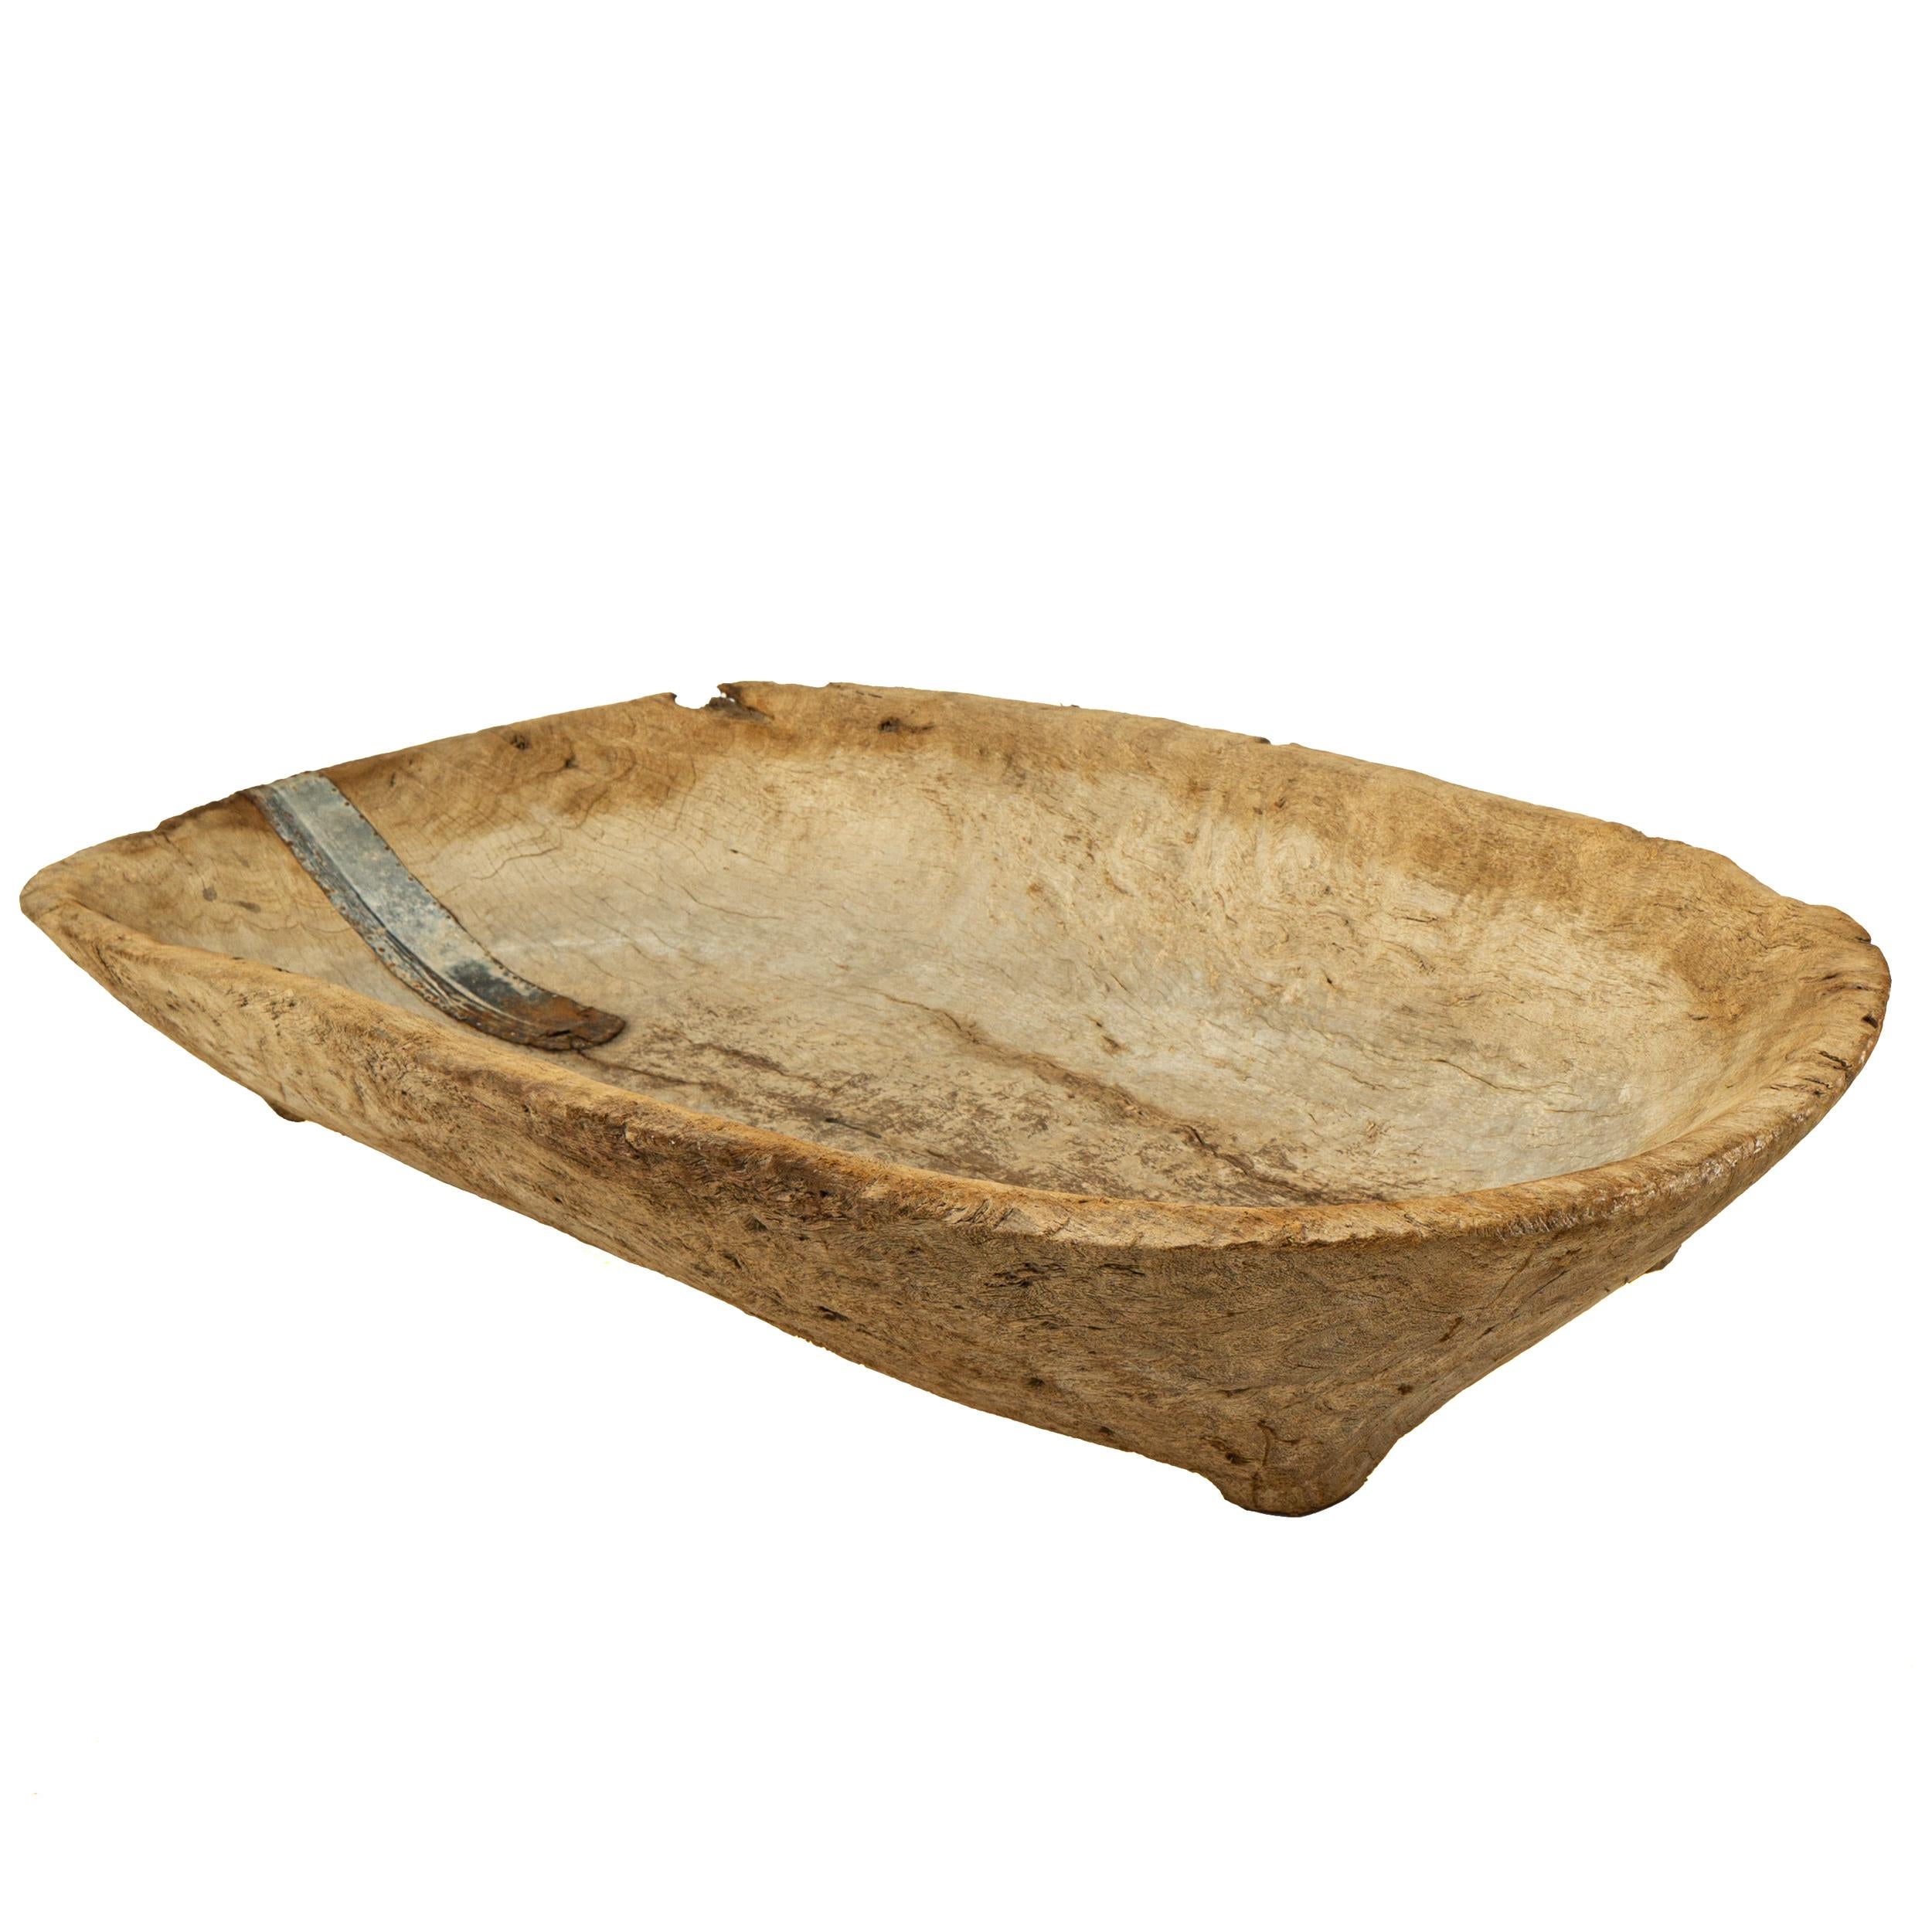 wooden trough bowl